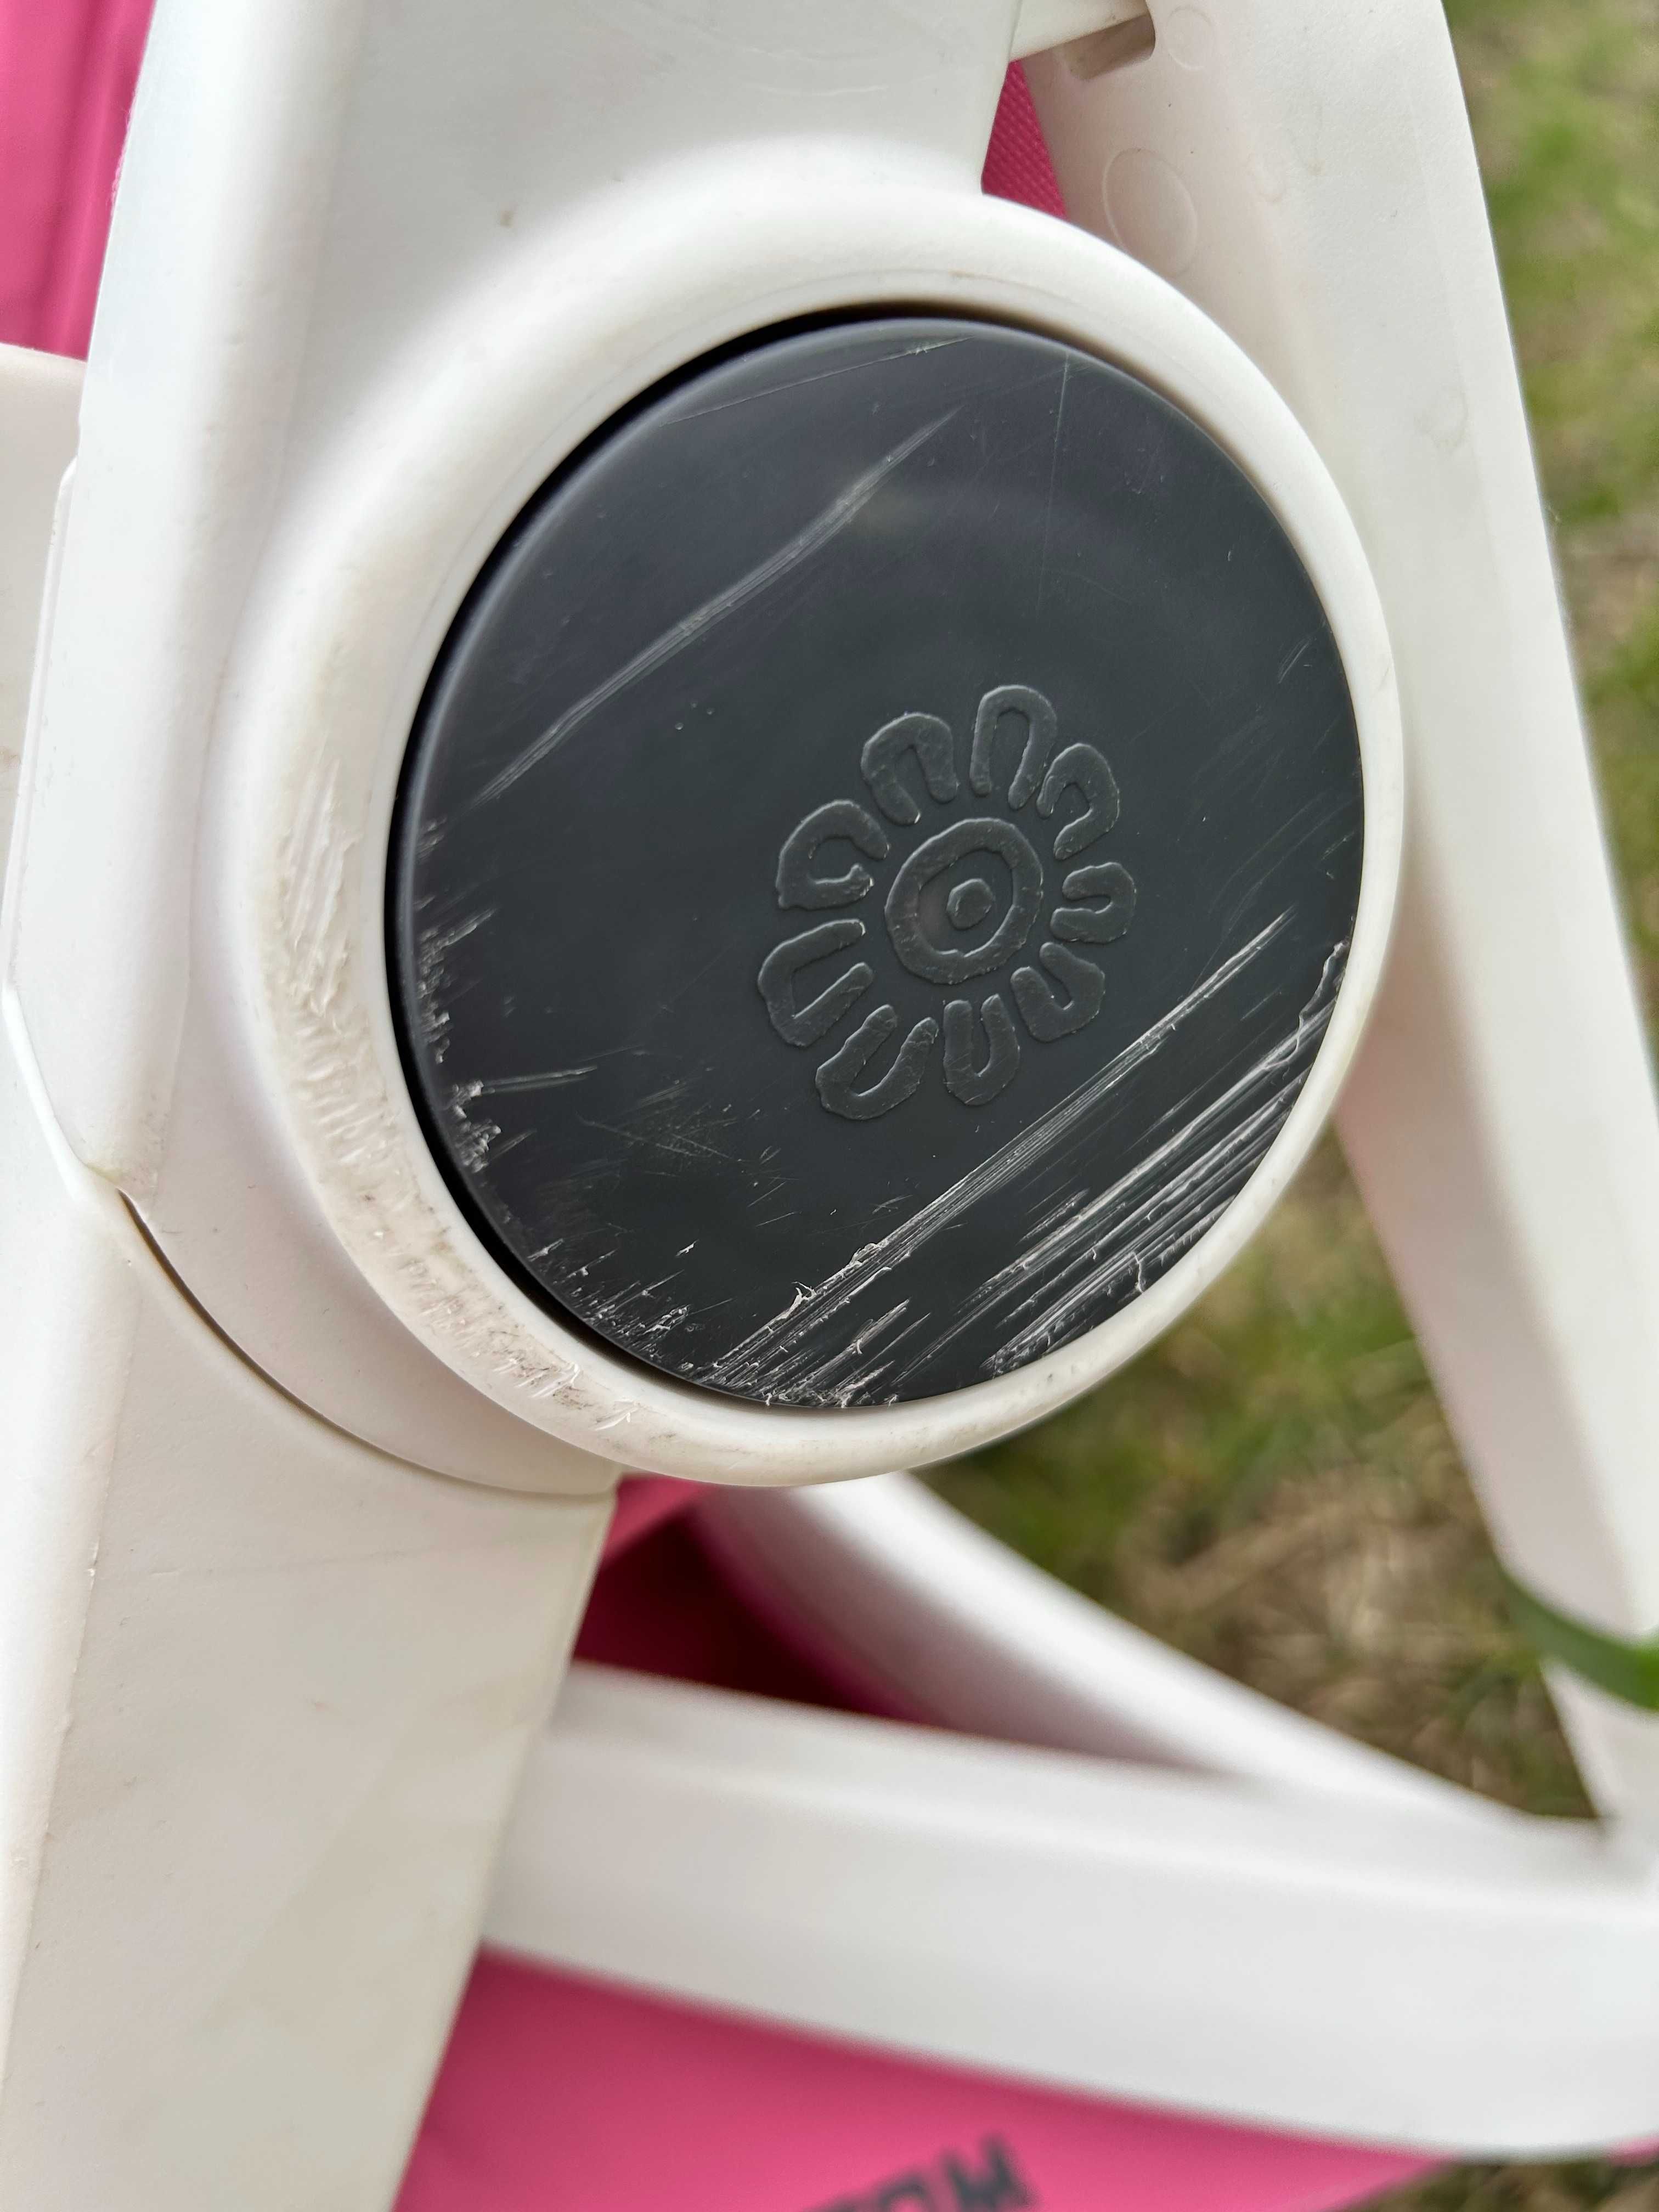 Wózek różowy spacerówka + siedzisko dla malucha REVERSIBLE